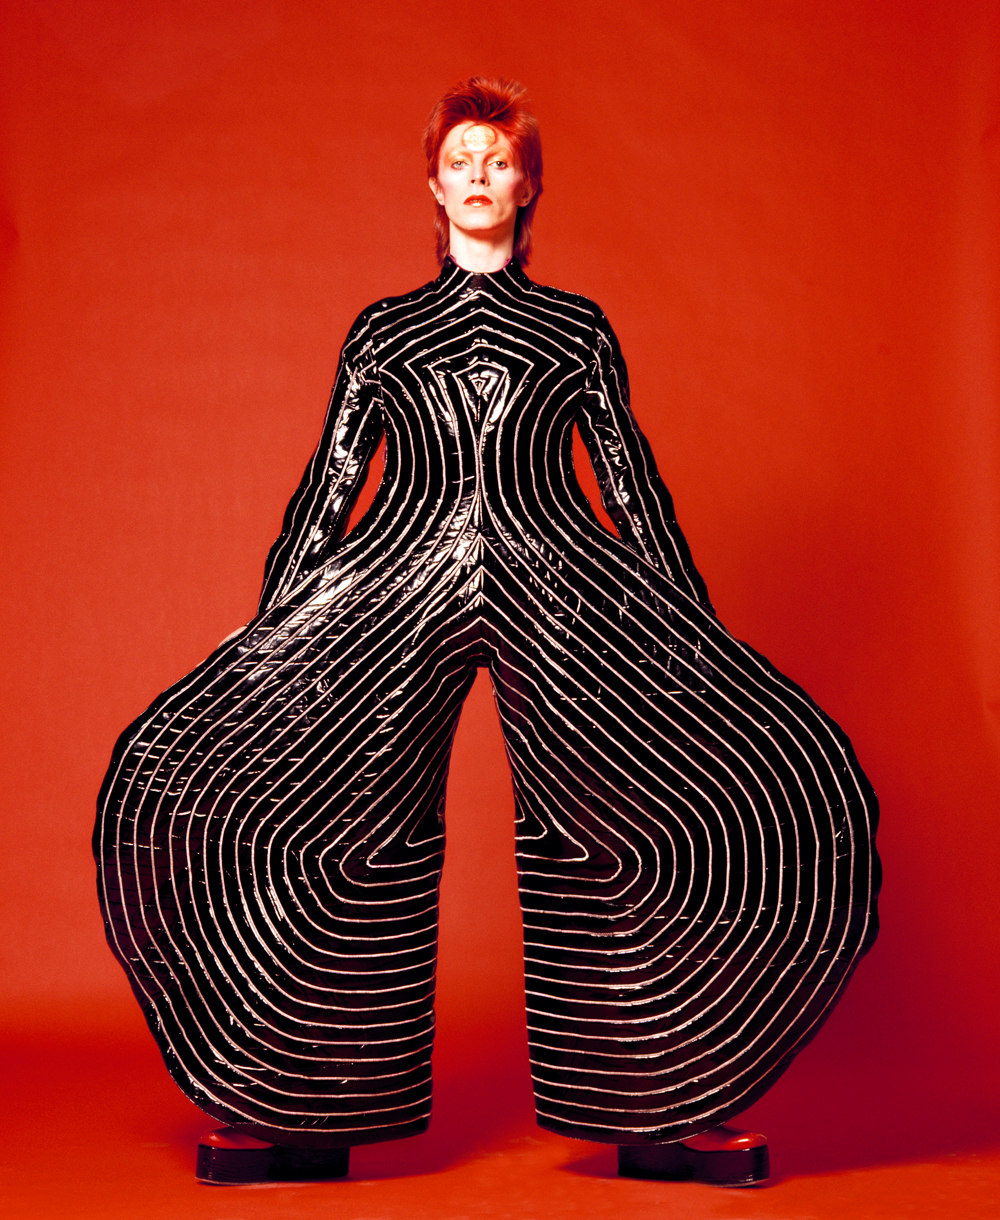 Exposição: Cinco bons motivos para visitar a exposição 'David Bowie Is'